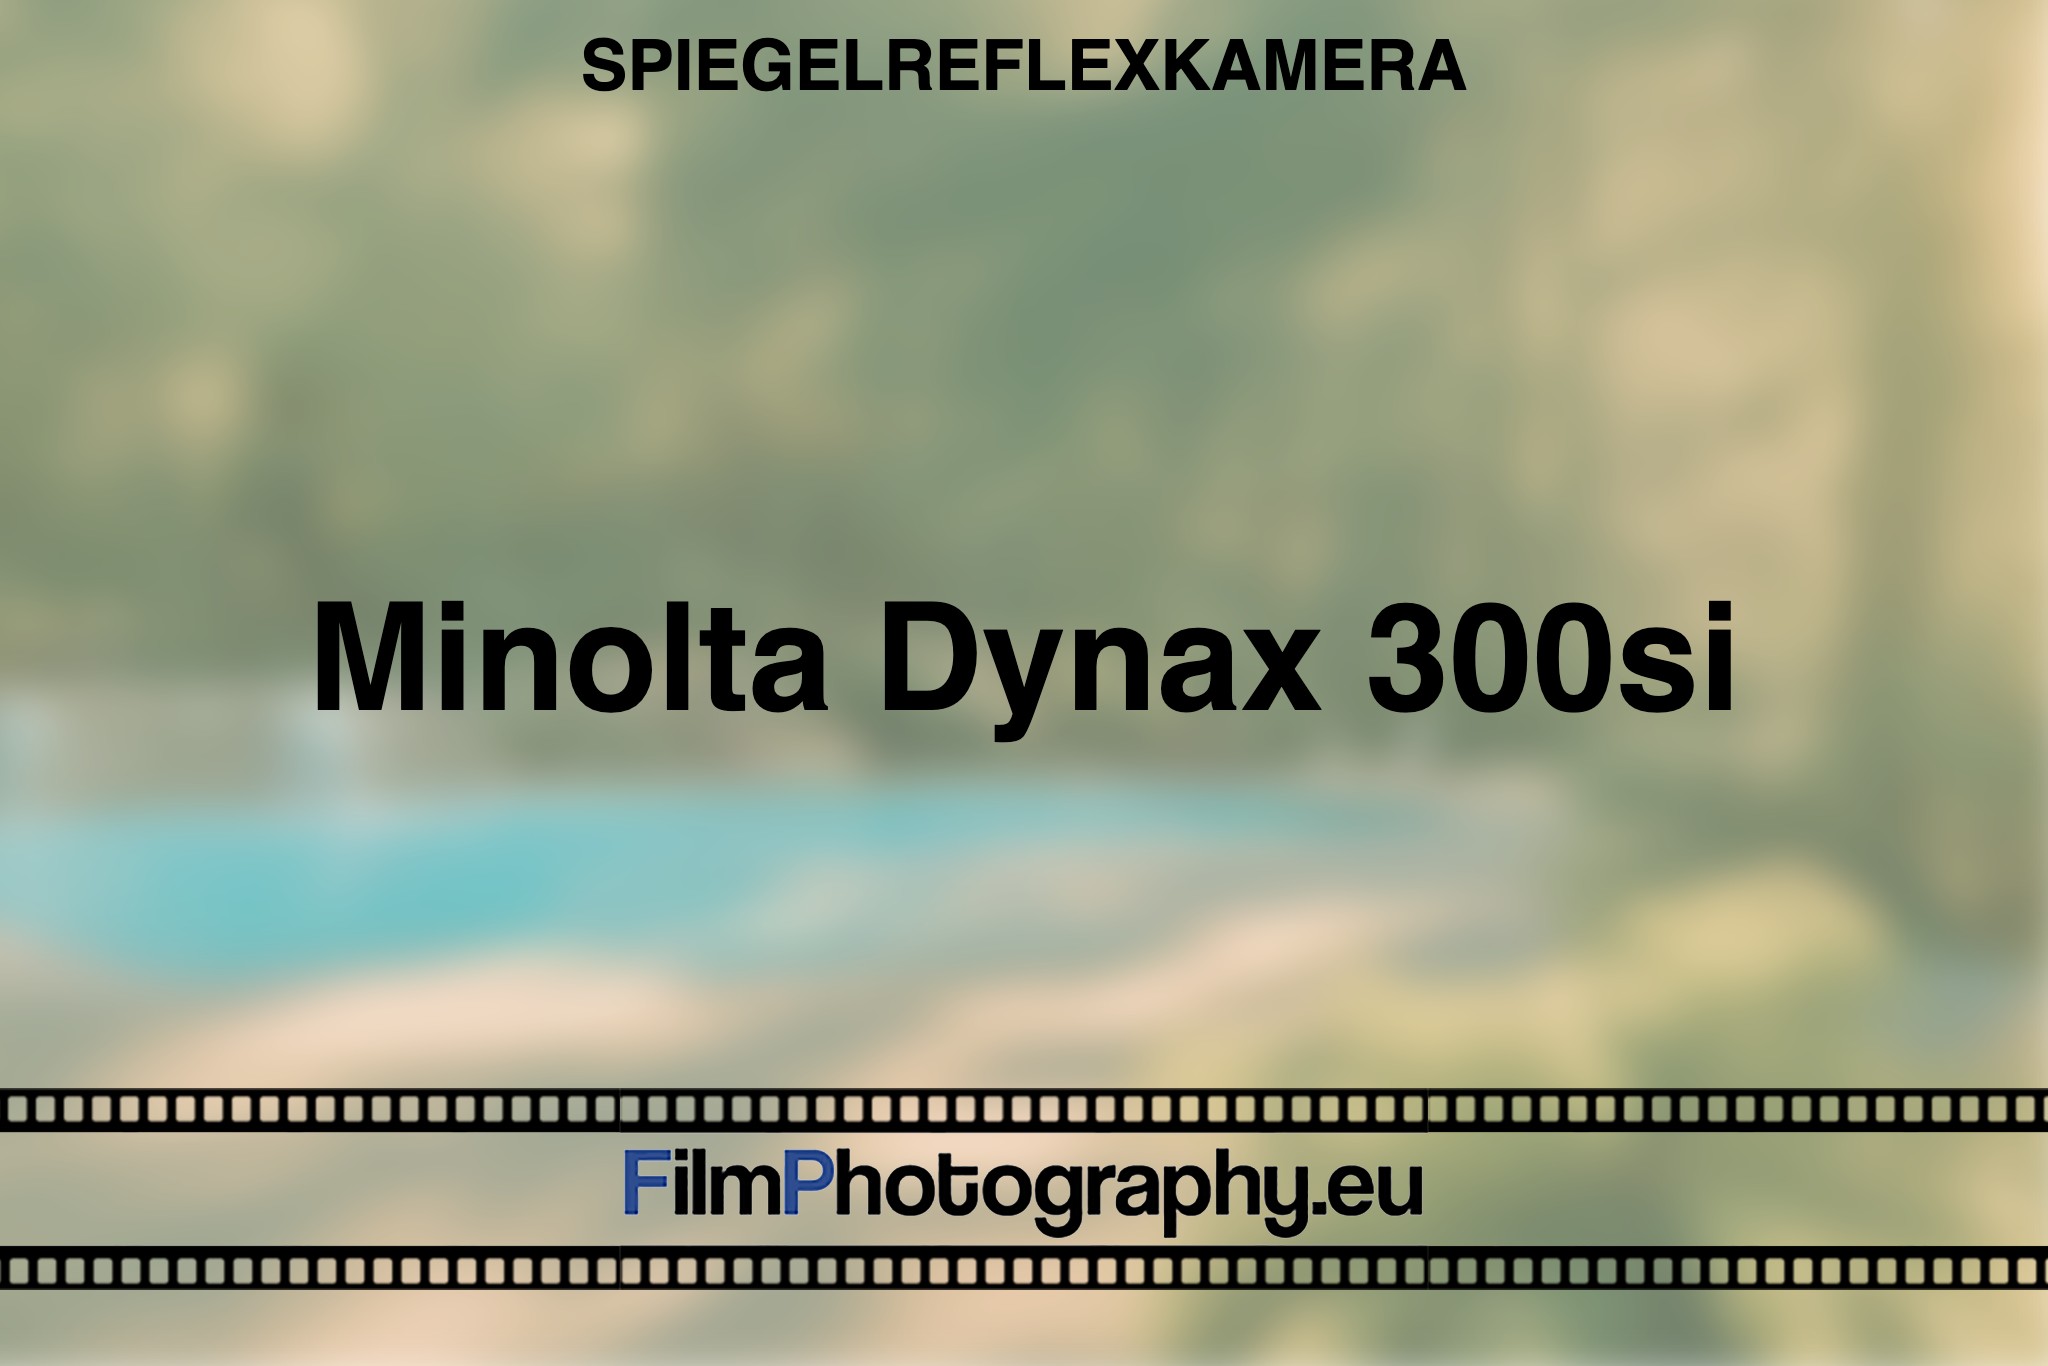 minolta-dynax-300si-spiegelreflexkamera-bnv